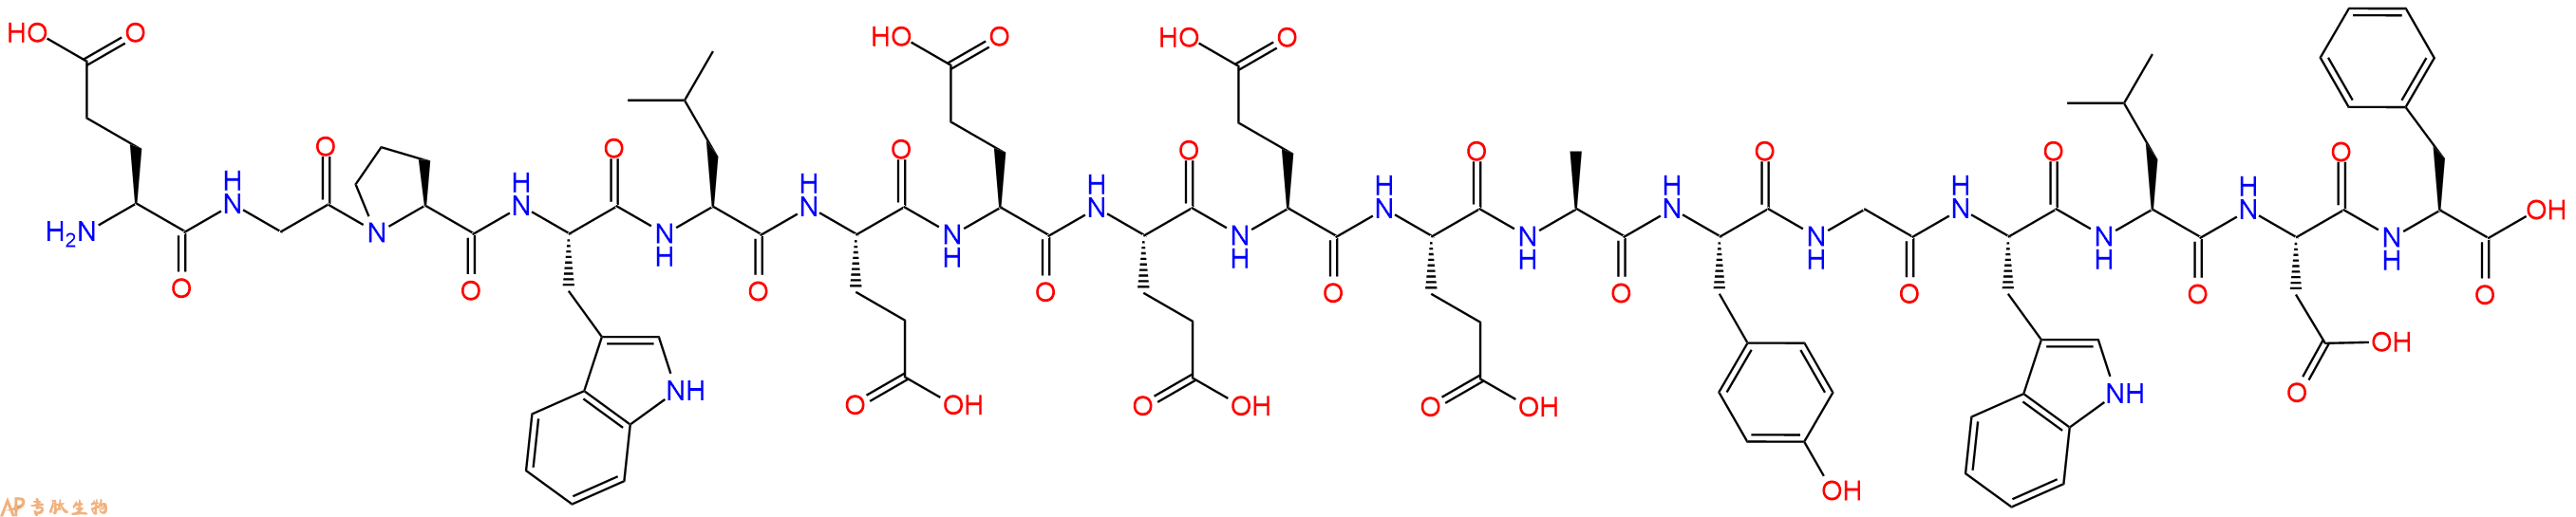 专肽生物产品H2N-Glu-Gly-Pro-Trp-Leu-Glu-Glu-Glu-Glu-Glu-Ala-Tyr-Gly-Trp-Leu-Asp-Phe-COOH